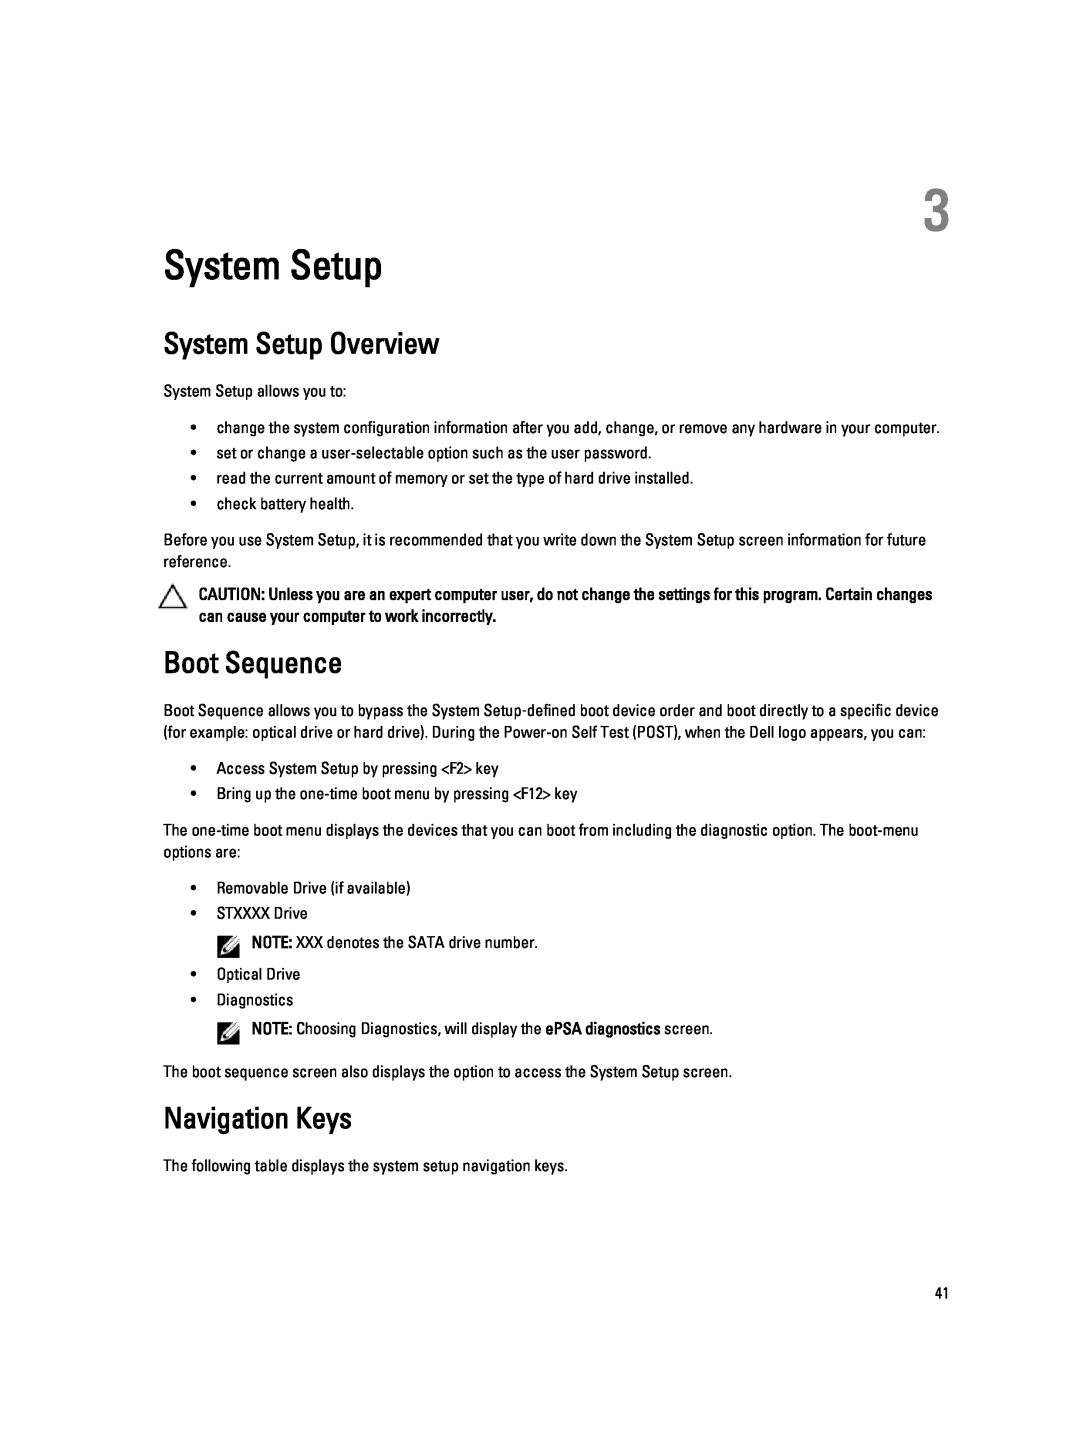 Dell 6430U owner manual System Setup Overview, Boot Sequence, Navigation Keys 